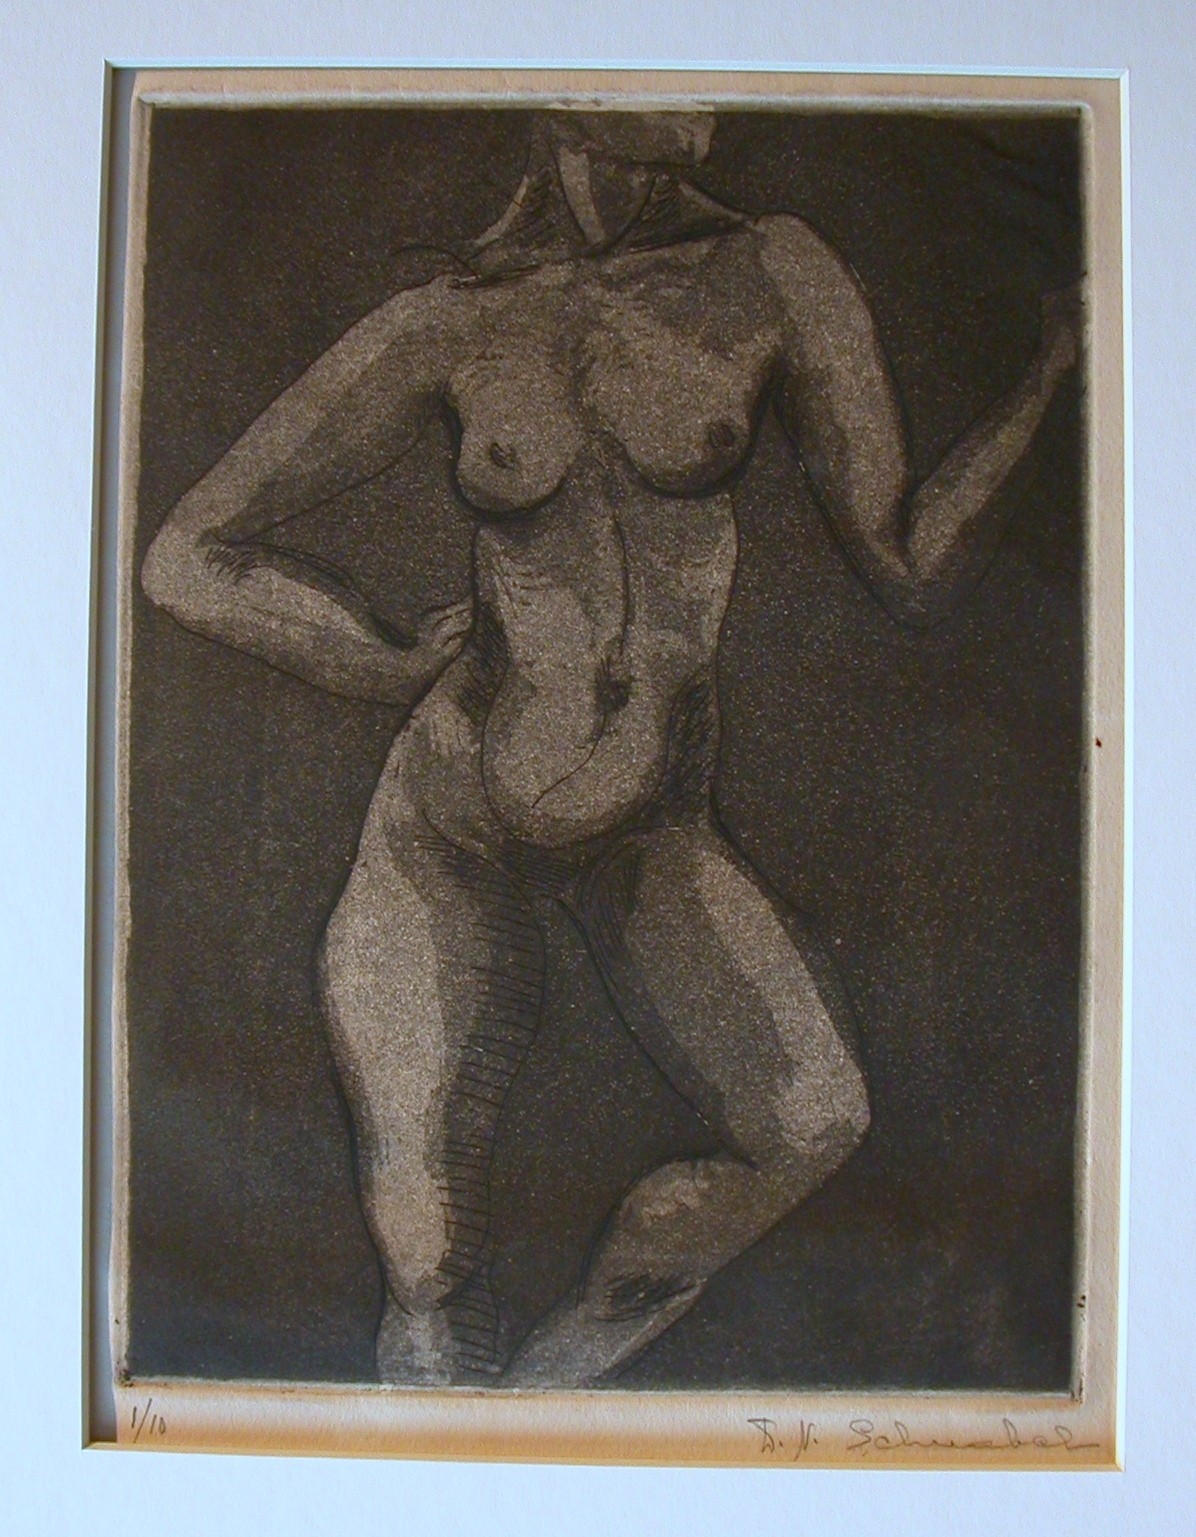  Schnabel (1898 - 1991) "Erotischer Akt in Pose"